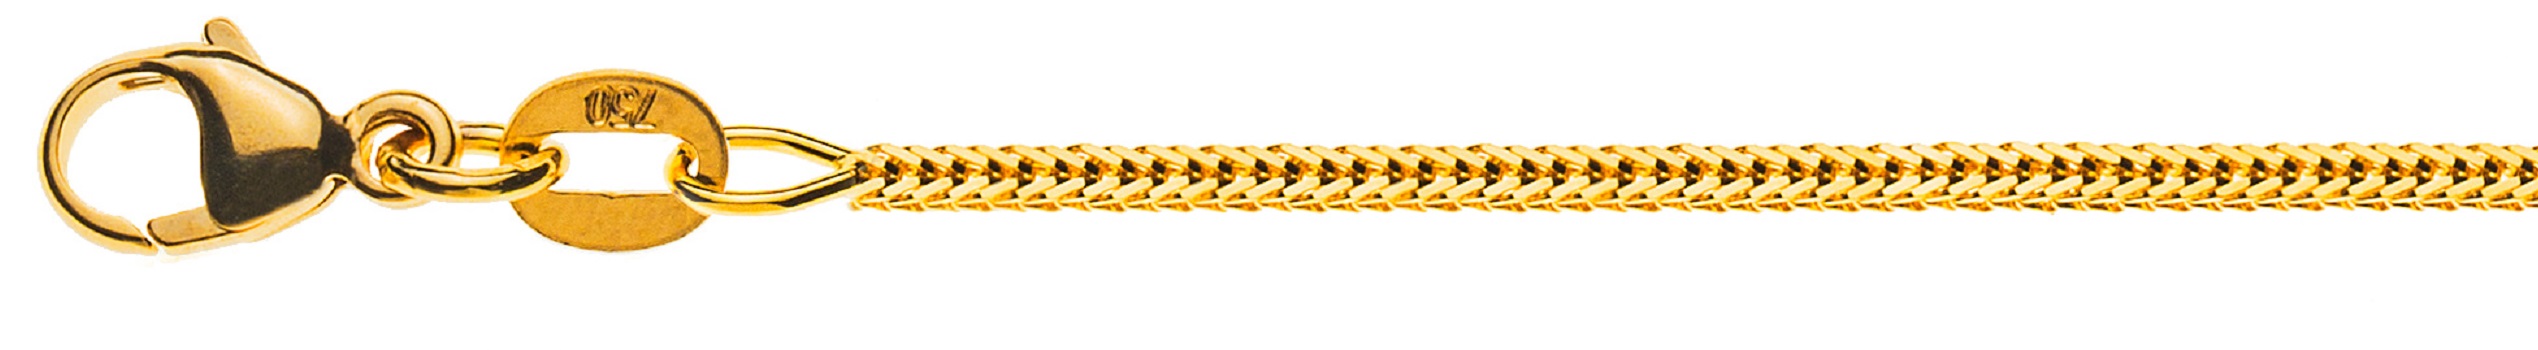 AURONOS Prestige Collier en or jaune 18K queue de renard diamantée 38cm 1.2mm